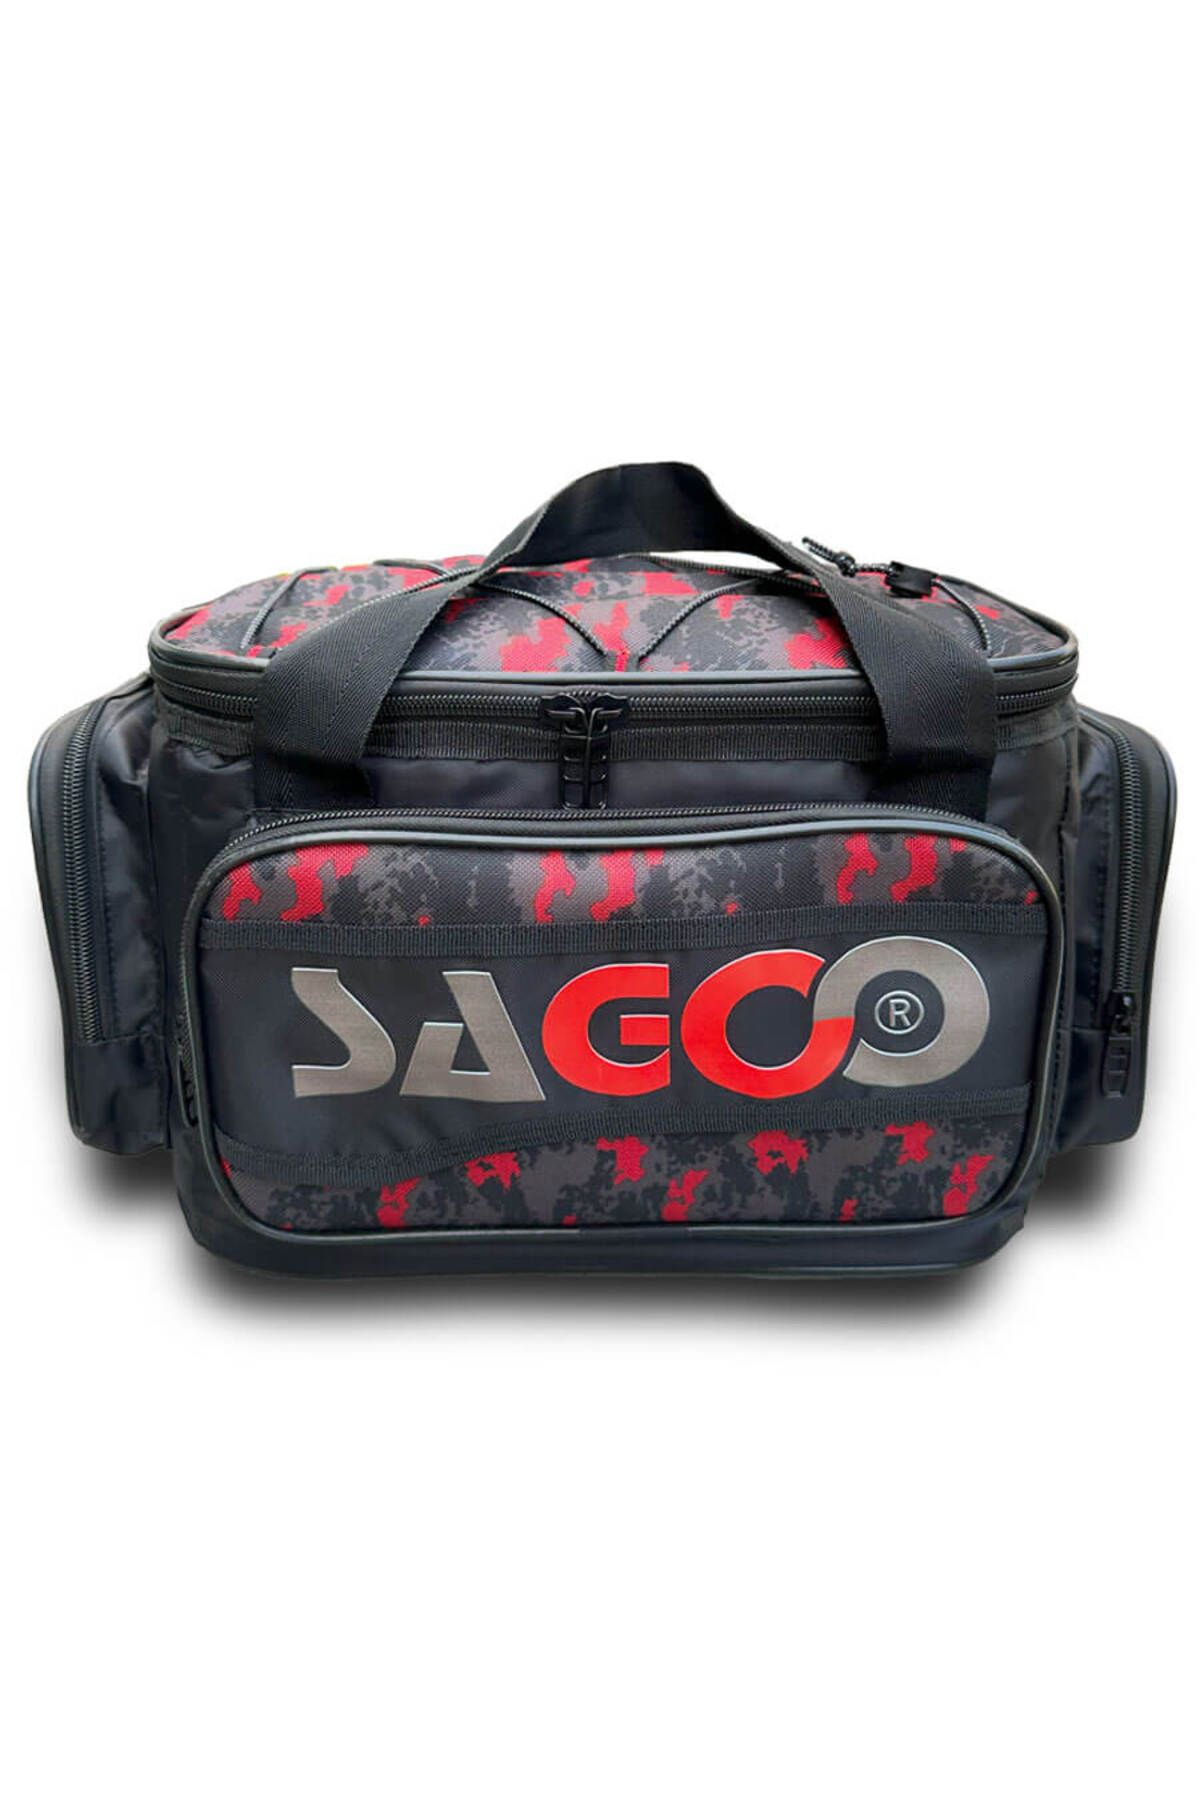 Sagoo Tackle Bag Red Camo Balıkçı Malzeme Çantası